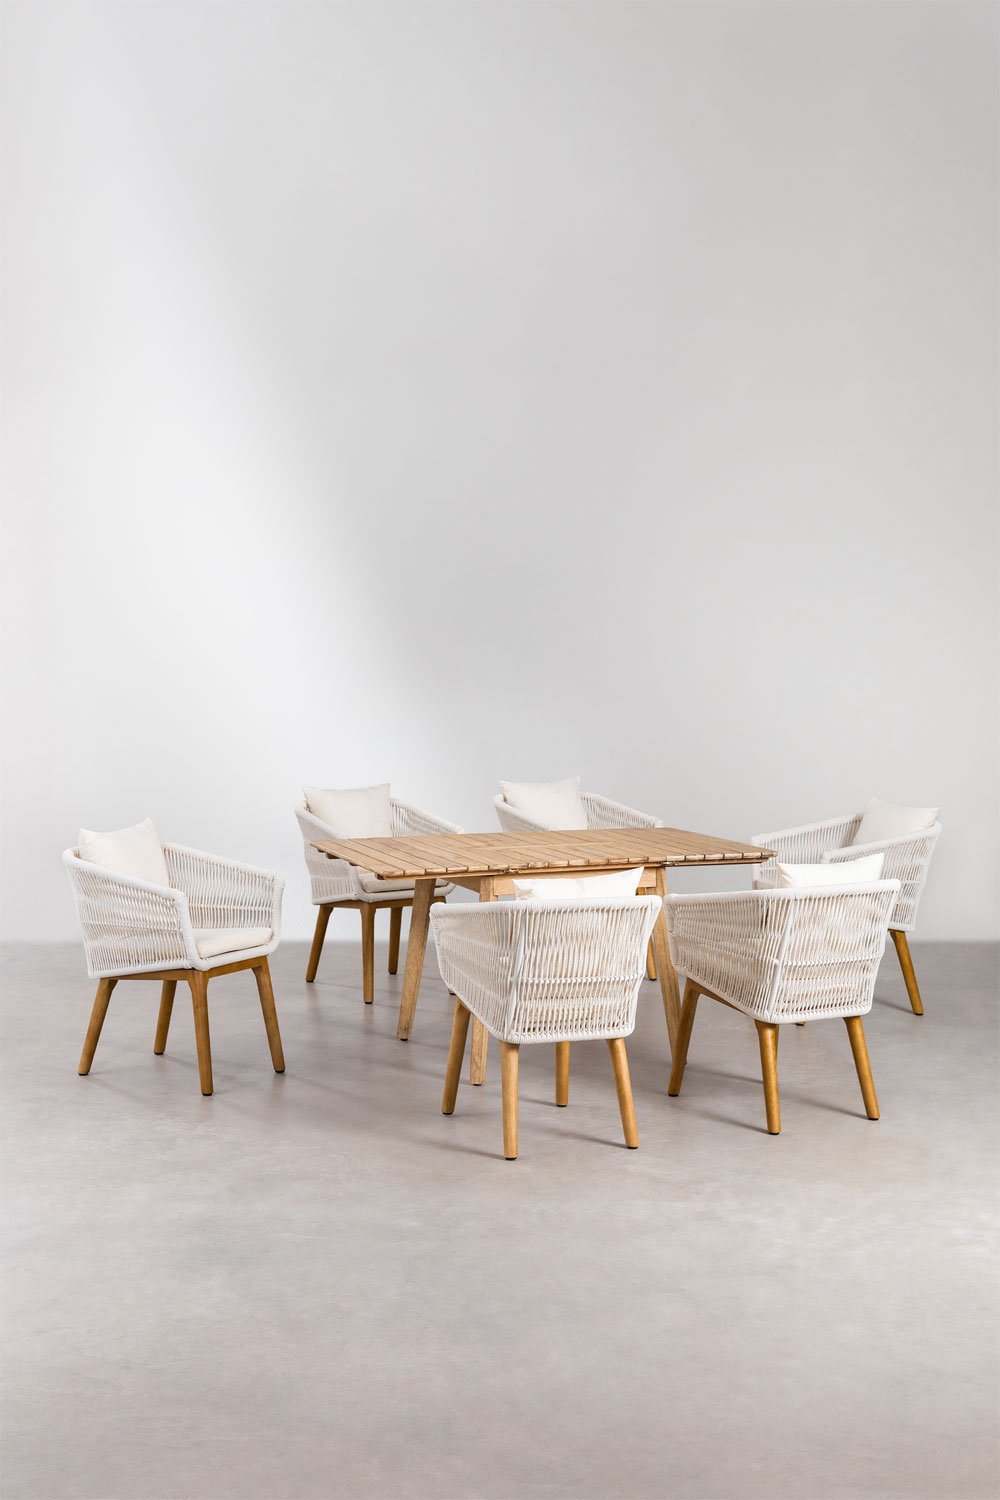 Houten uitschuifbare tafelset (90-150x90 cm) Naele en 6 Barker tuinstoelen, galerij beeld 1